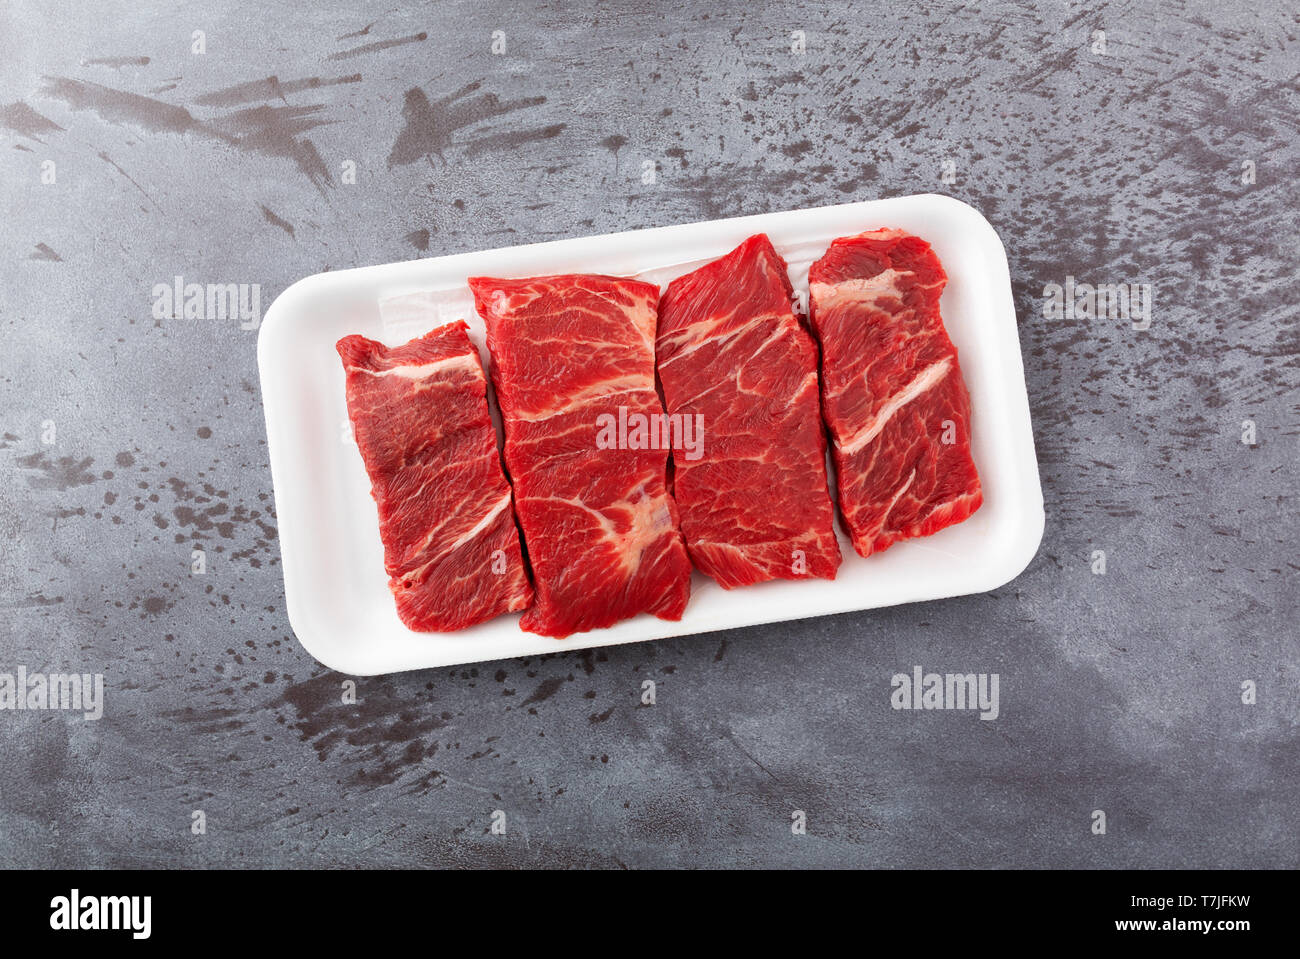 Vue de dessus de plusieurs morceaux de viande bovine désossée côtes courtes chuck steaks grillés sur un plateau de mousse sur un comptoir gris éclairés par la lumière naturelle. Banque D'Images